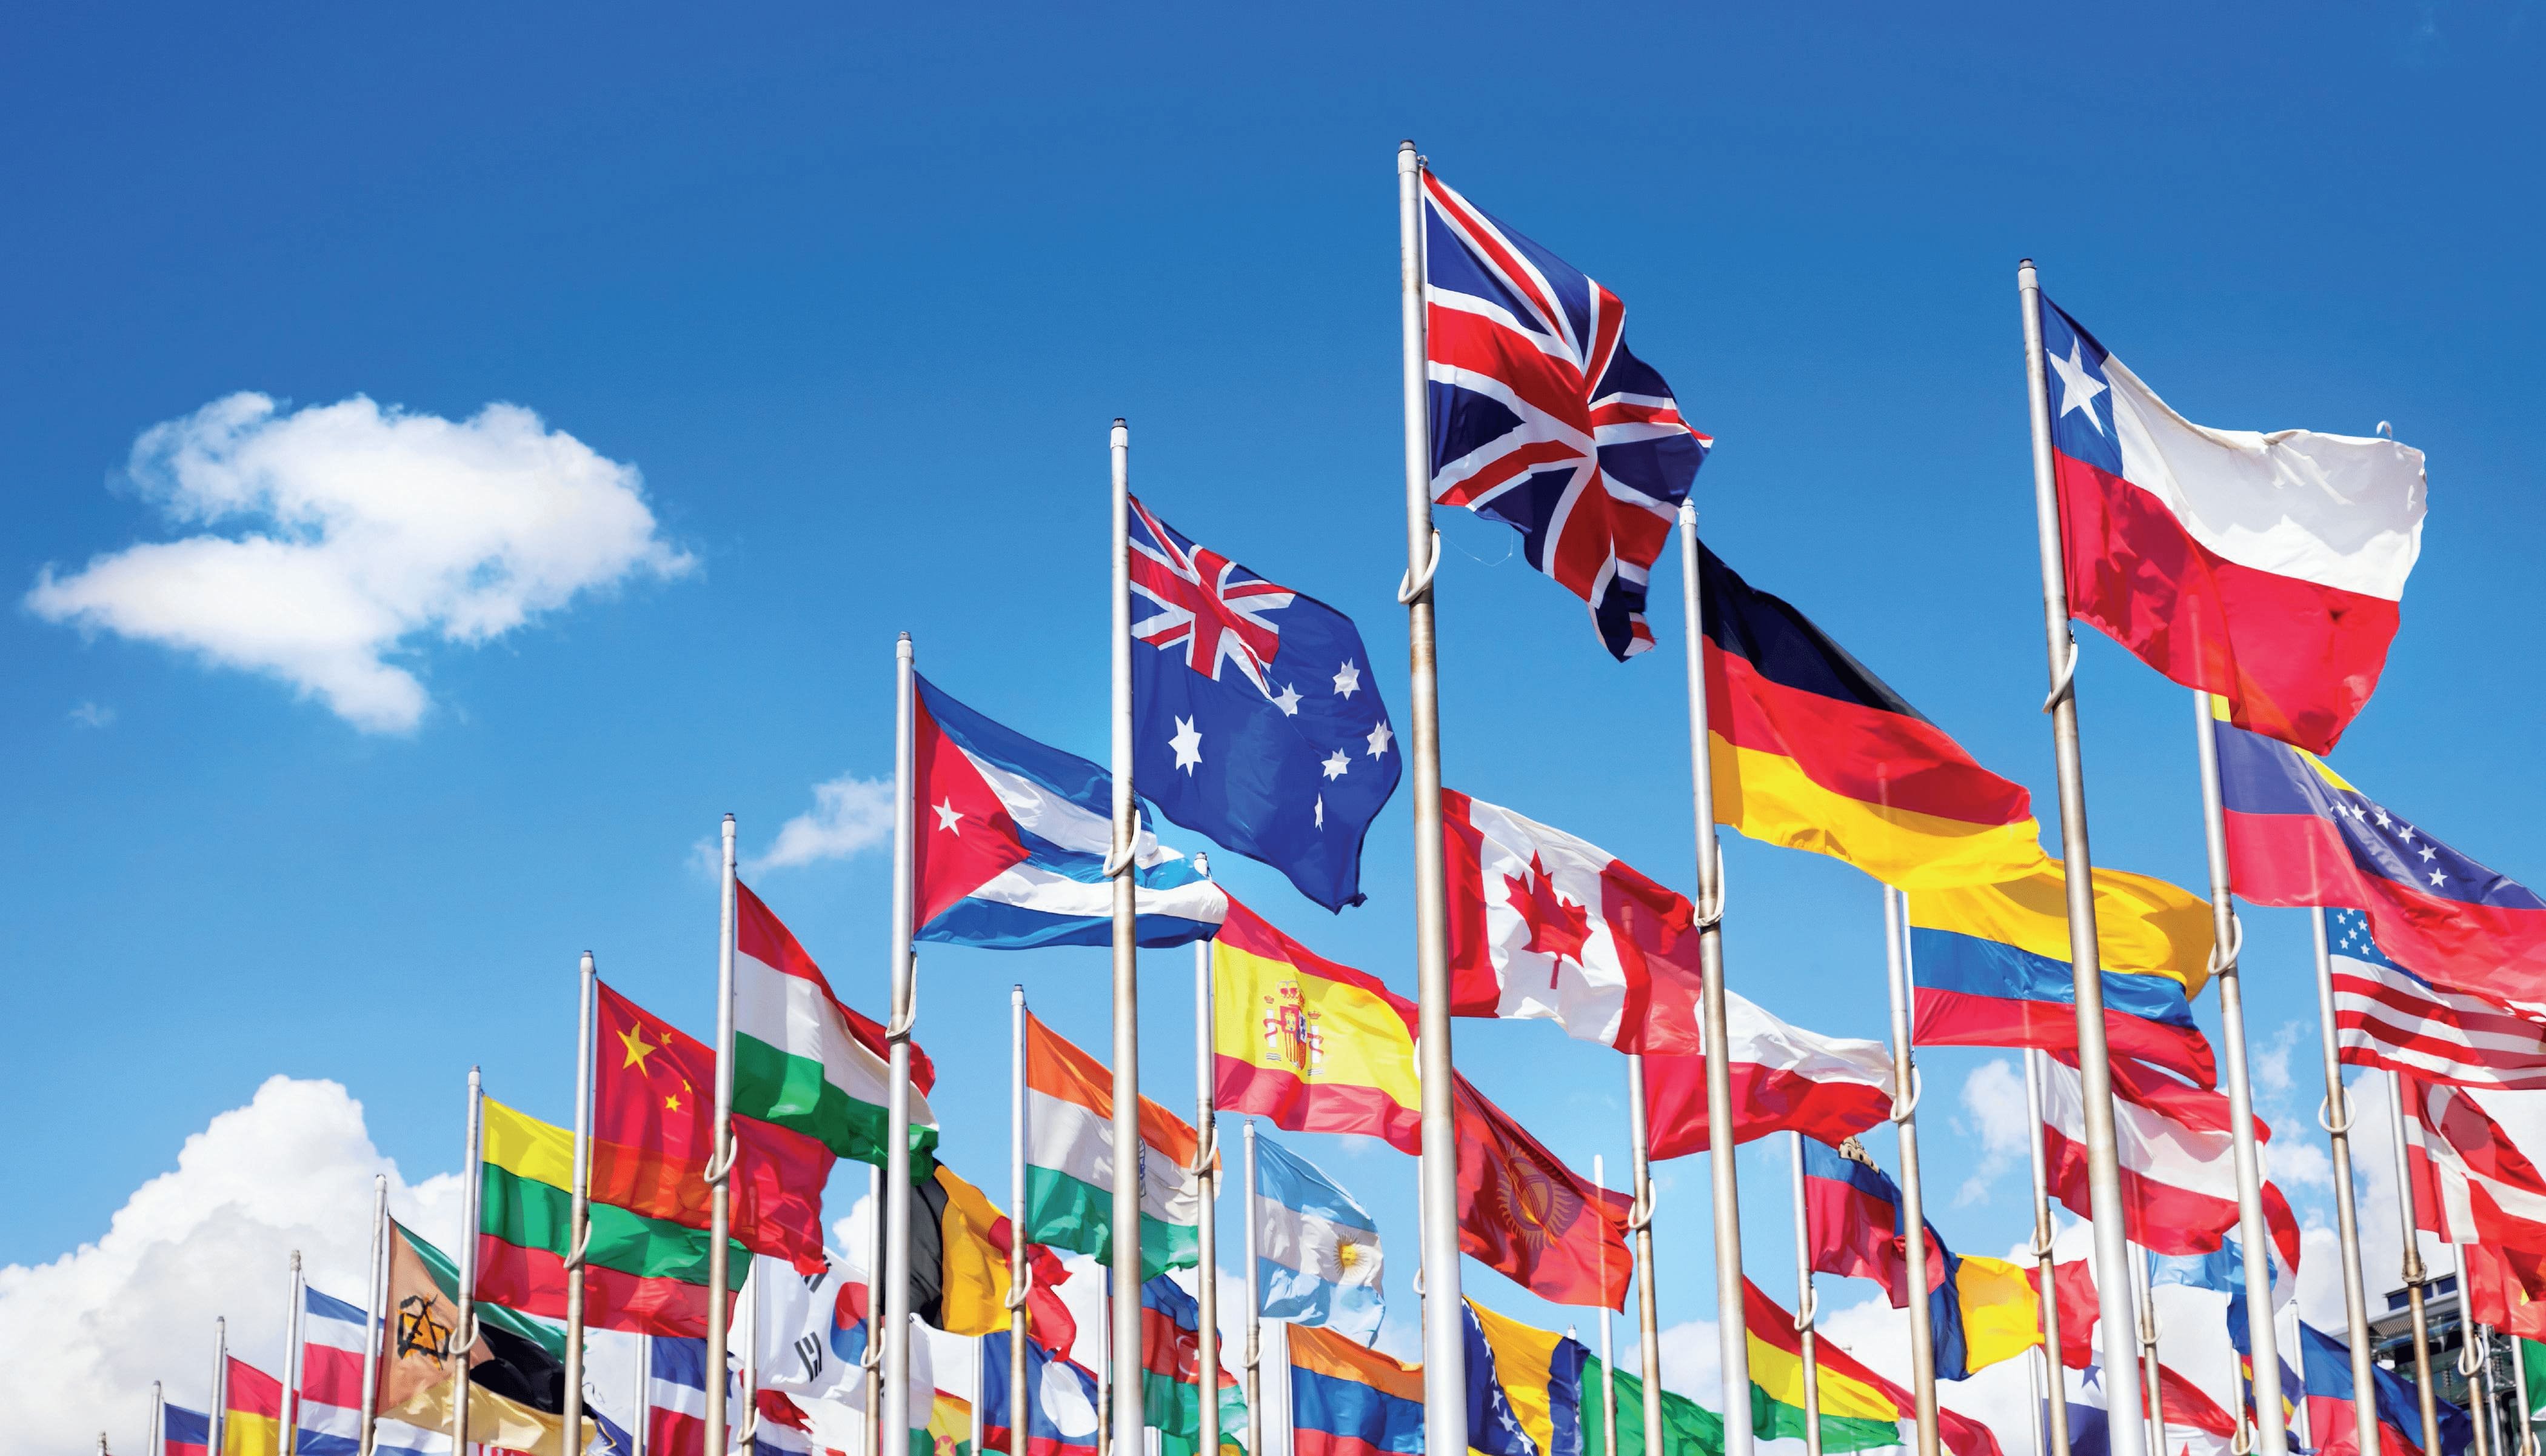 Int co. Иностранные государства. Международное сотрудничество. Флаги разных стран. Много флагов разных стран.